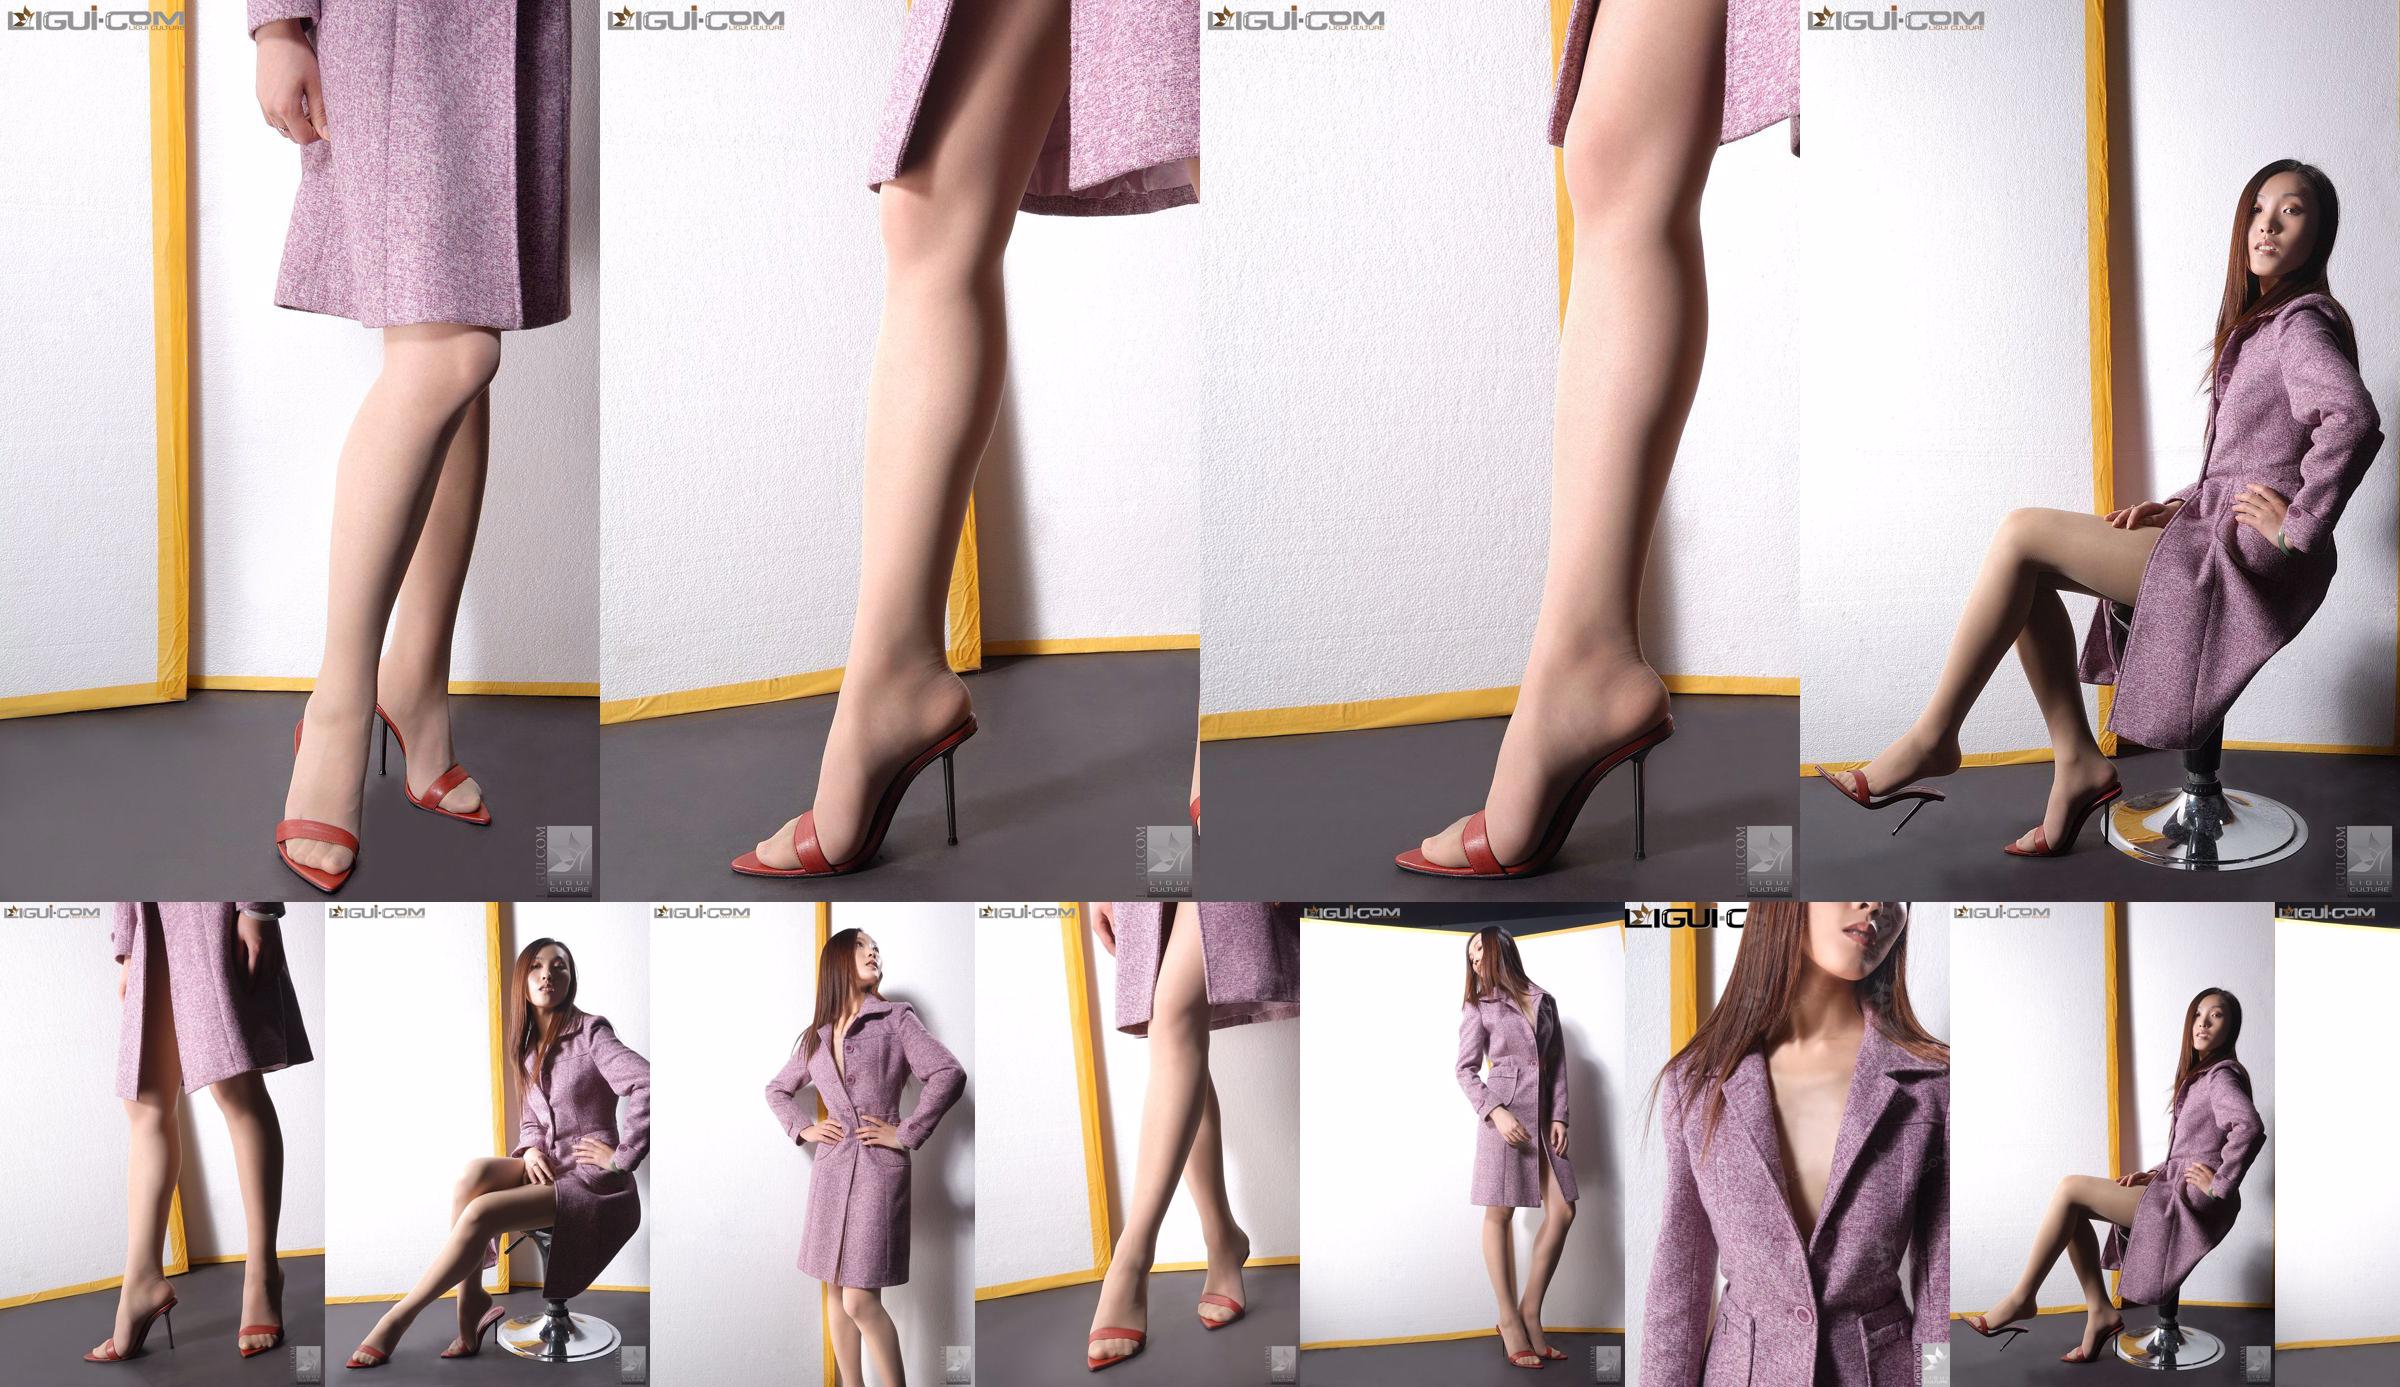 Modelo Zhang Ai "Chica tejo con tacones altos" [Ligui LiGui] Foto de hermosas piernas y pies No.06de44 Página 1